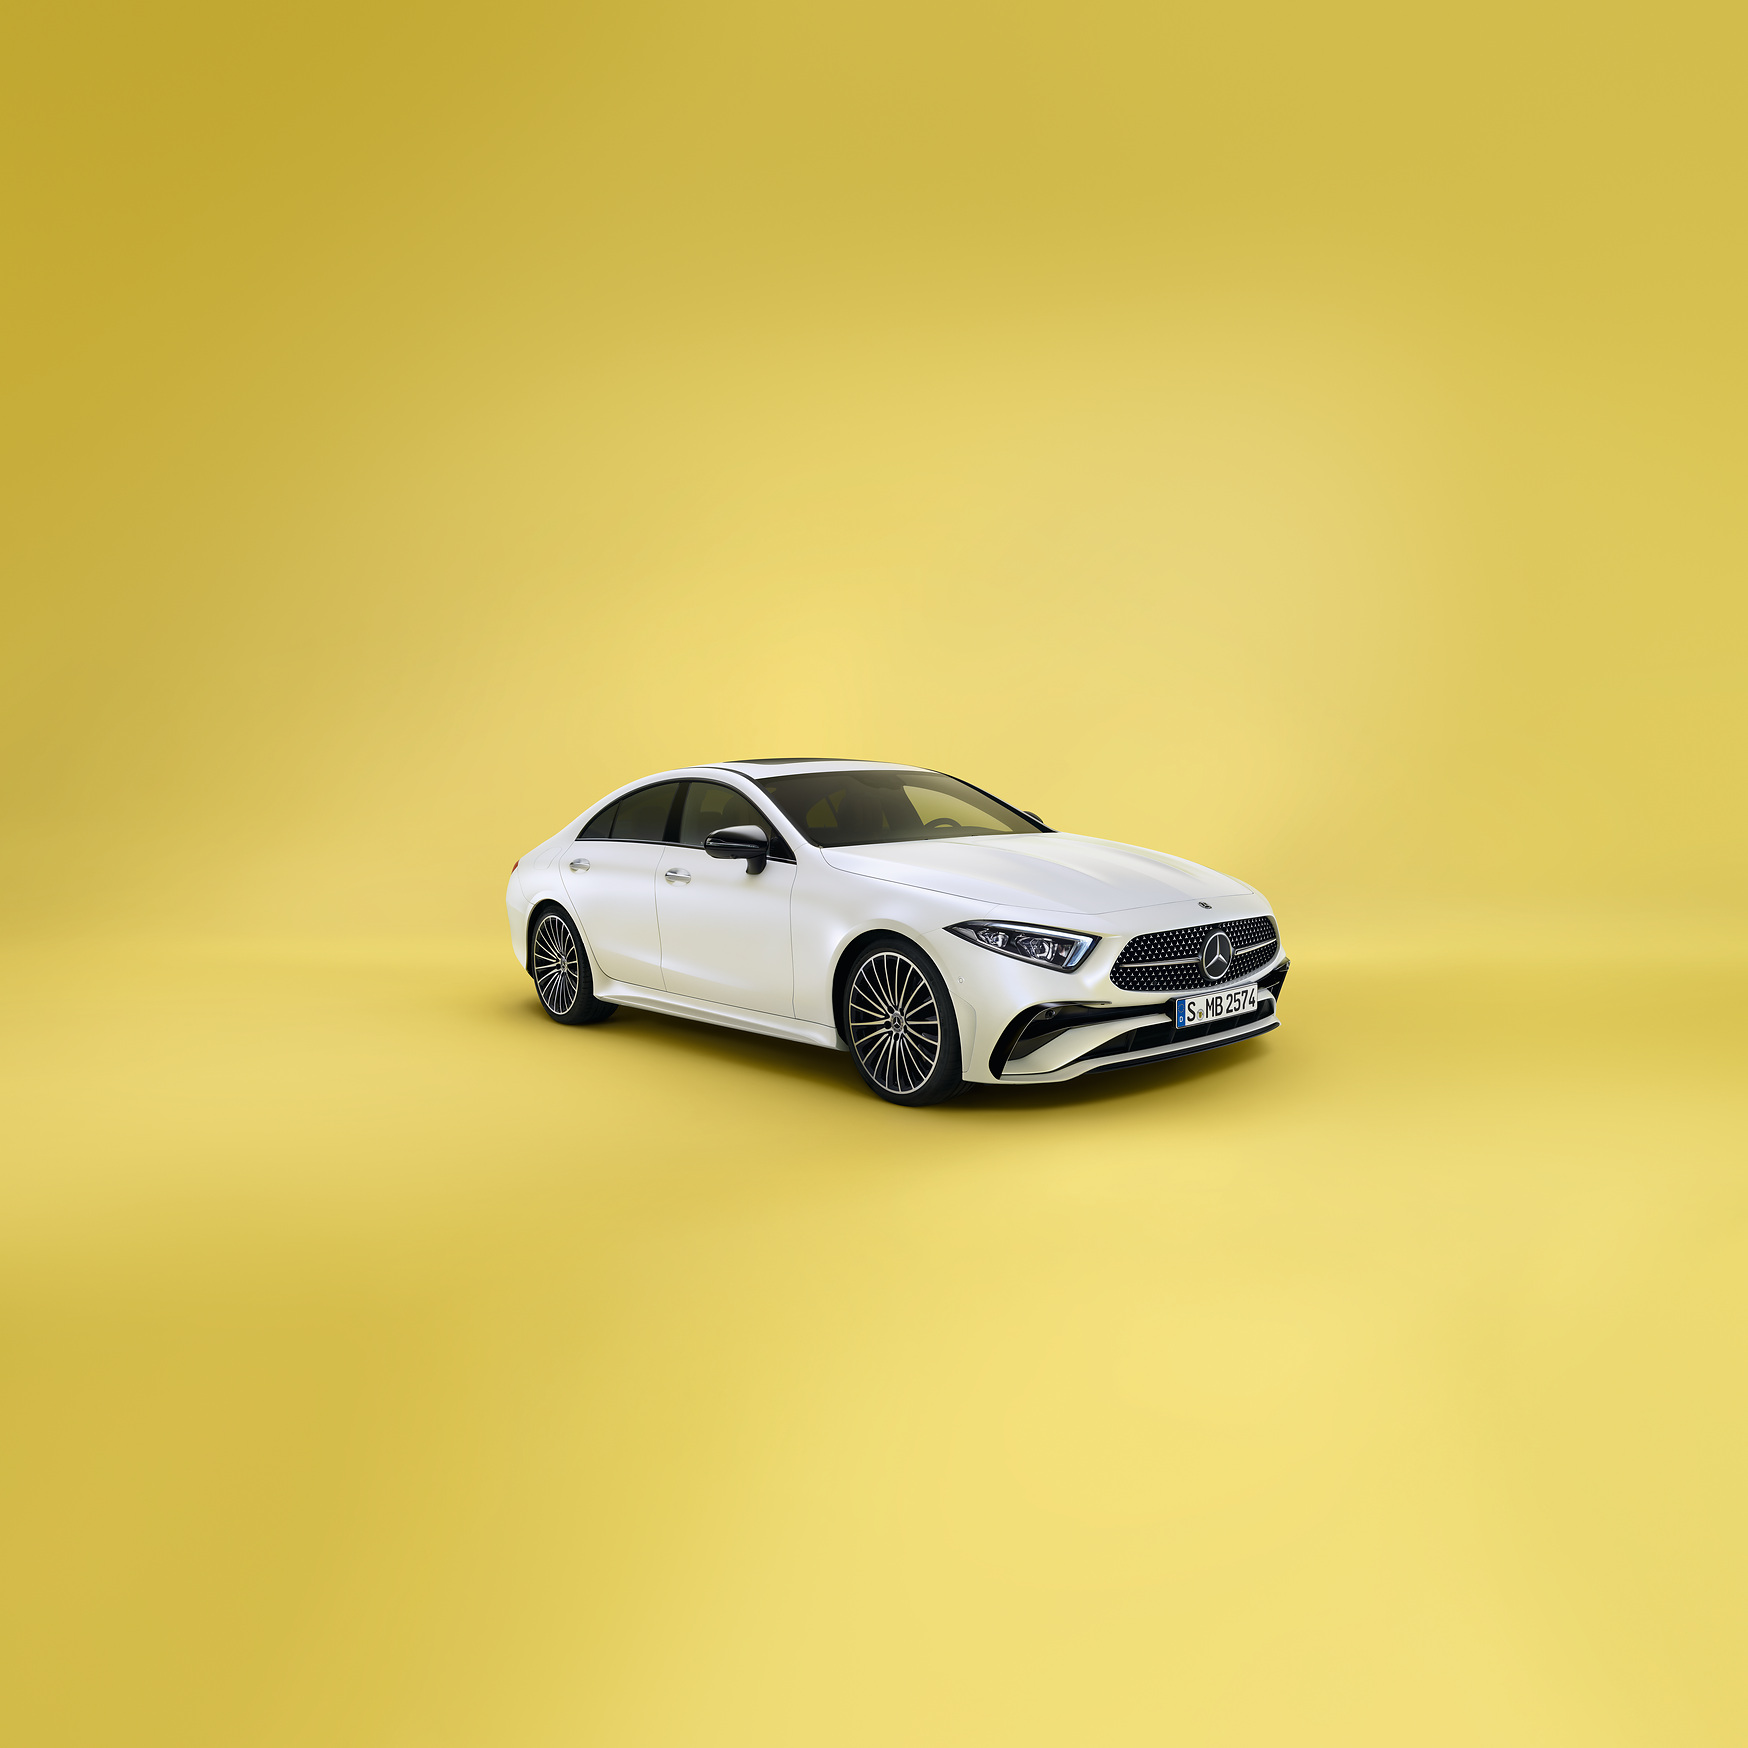 Mercedes Nouveau CLS Coupé Blanche en arrêt - Vue de trois quarts de profil à l'arrêt